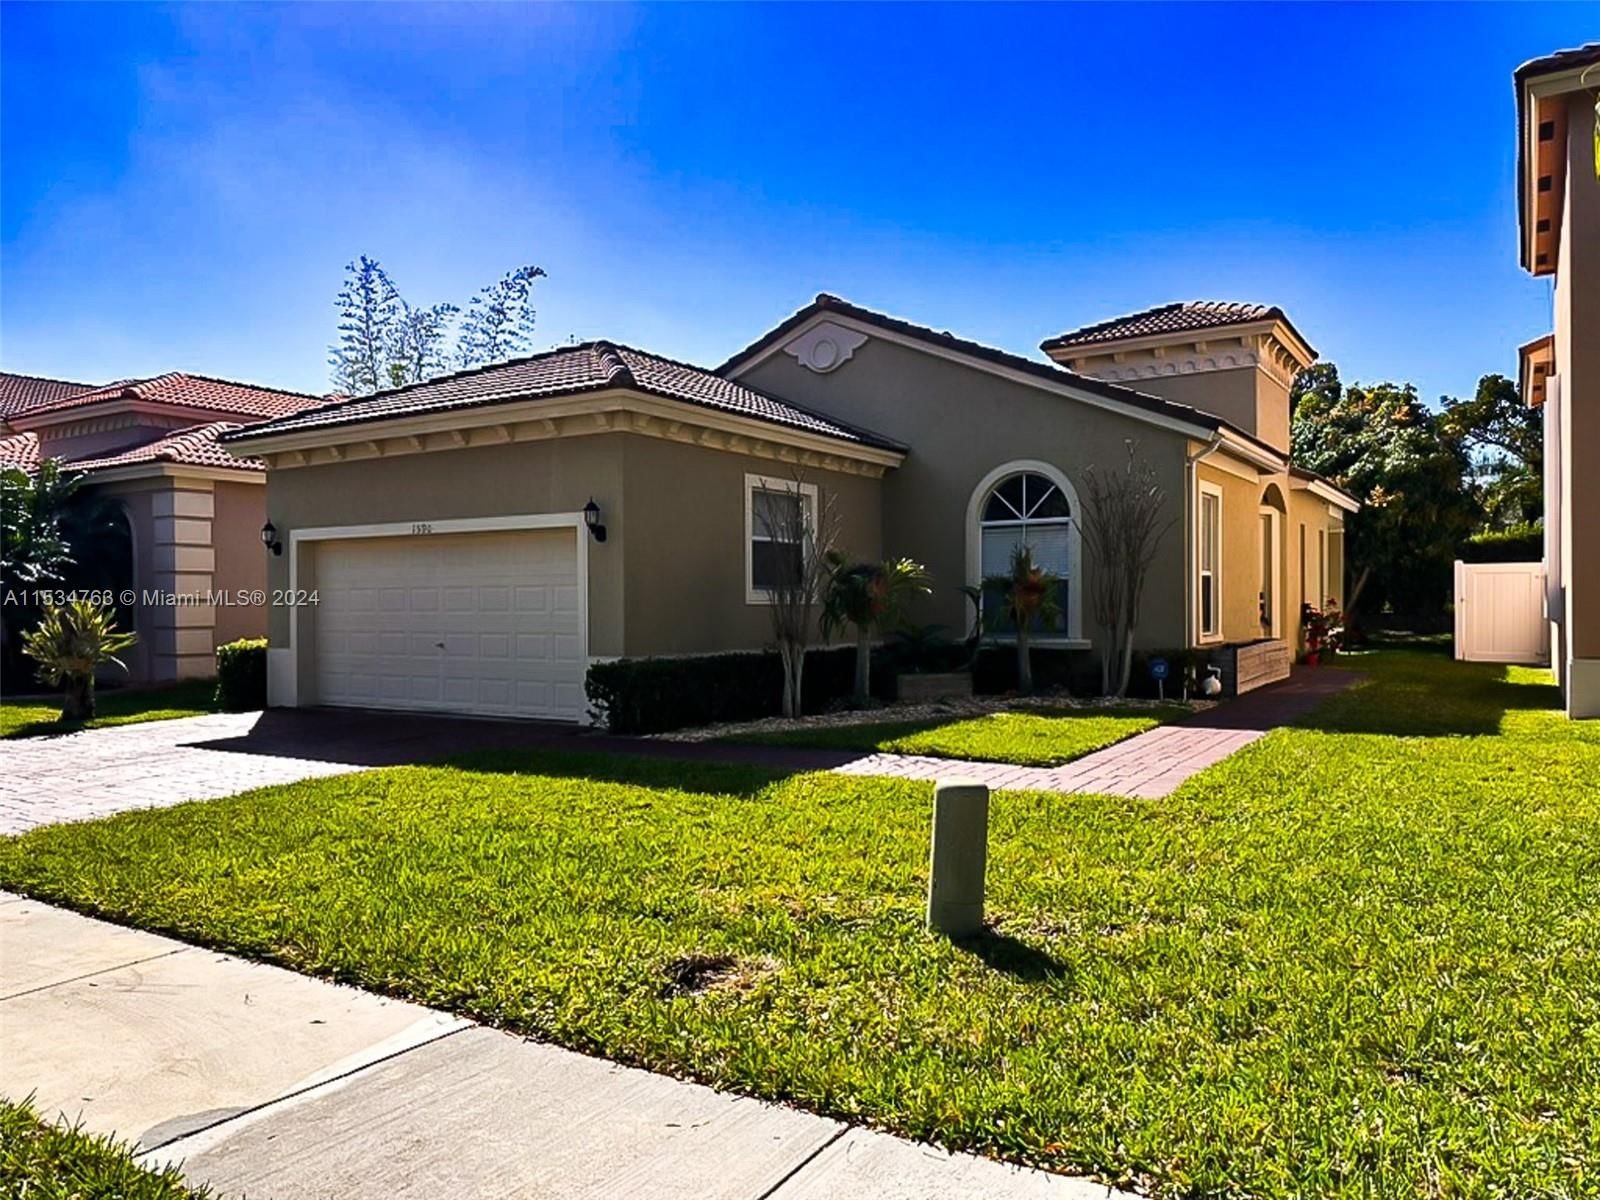 Real estate property located at 1590 37th Ave, Miami-Dade County, PORTOFINO LAKES, Homestead, FL